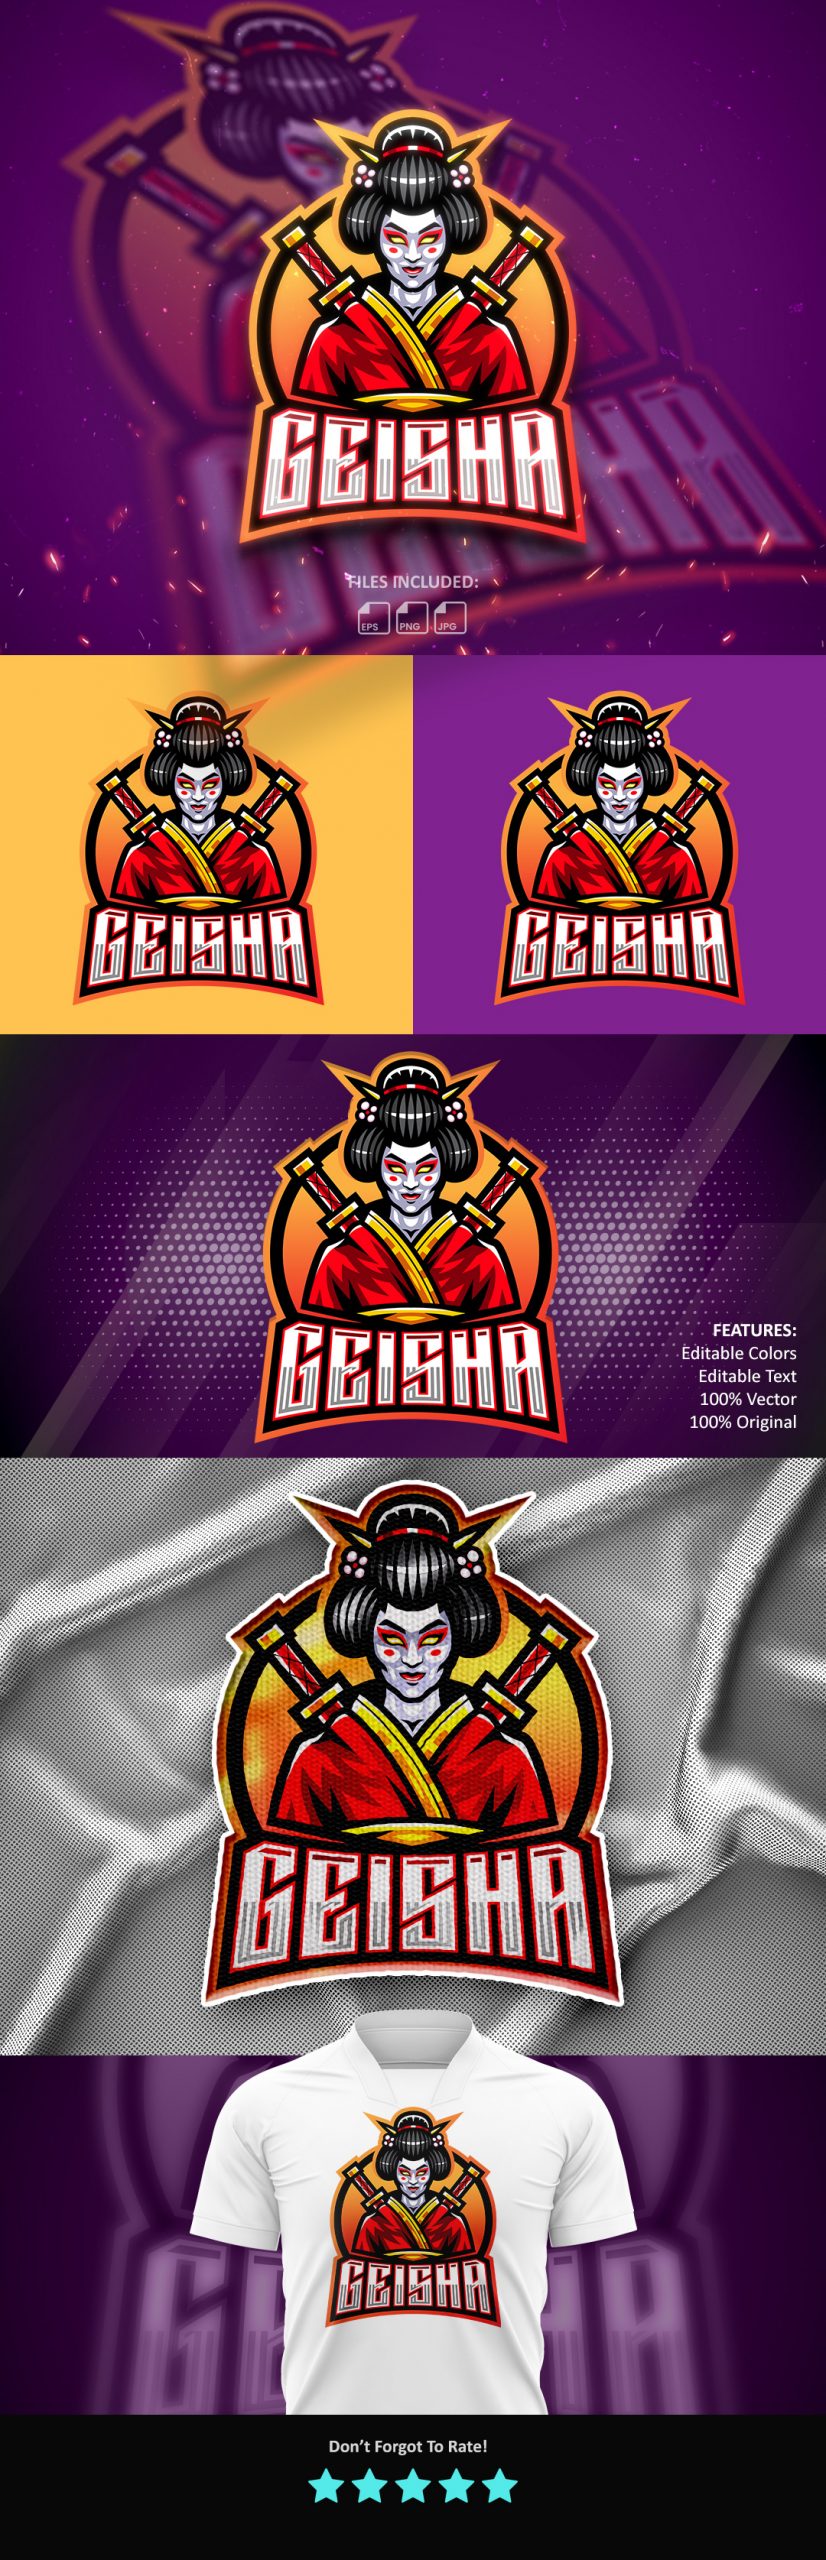 Free Geisha Mascot Logo Template